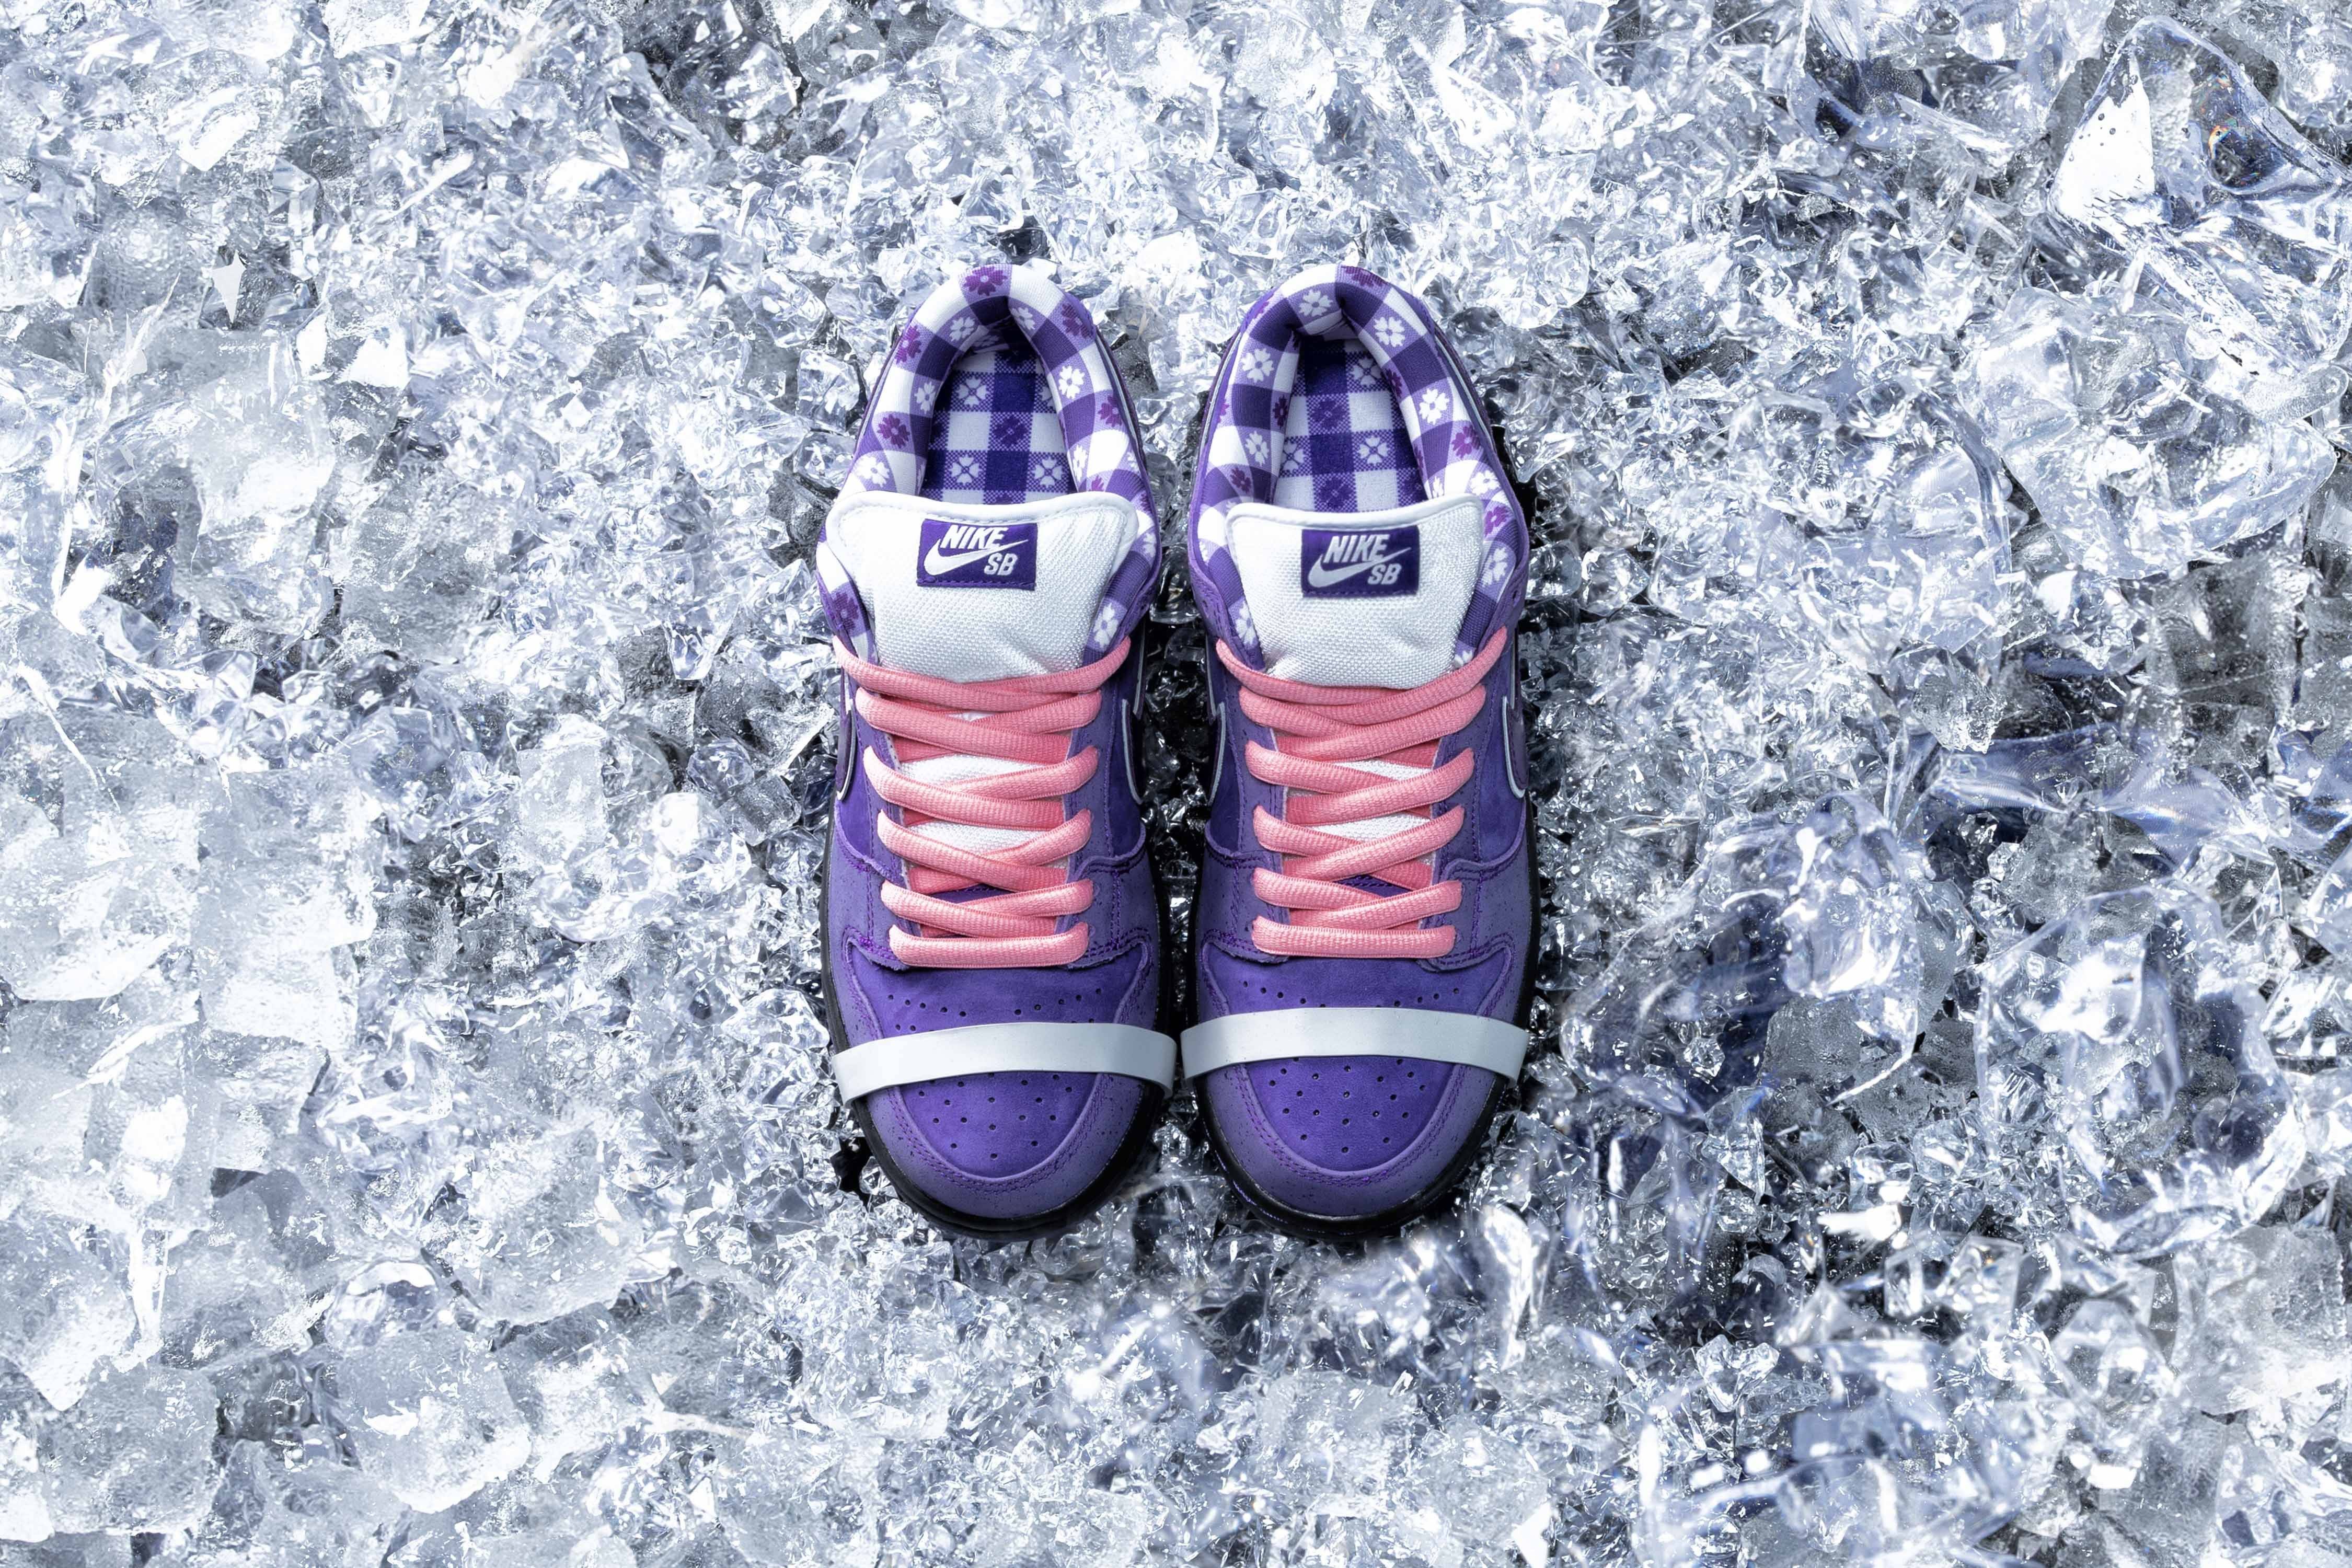 CONCEPTS × Nike SB Dunk - релиз новых кроссовок Purple Lobster, модель